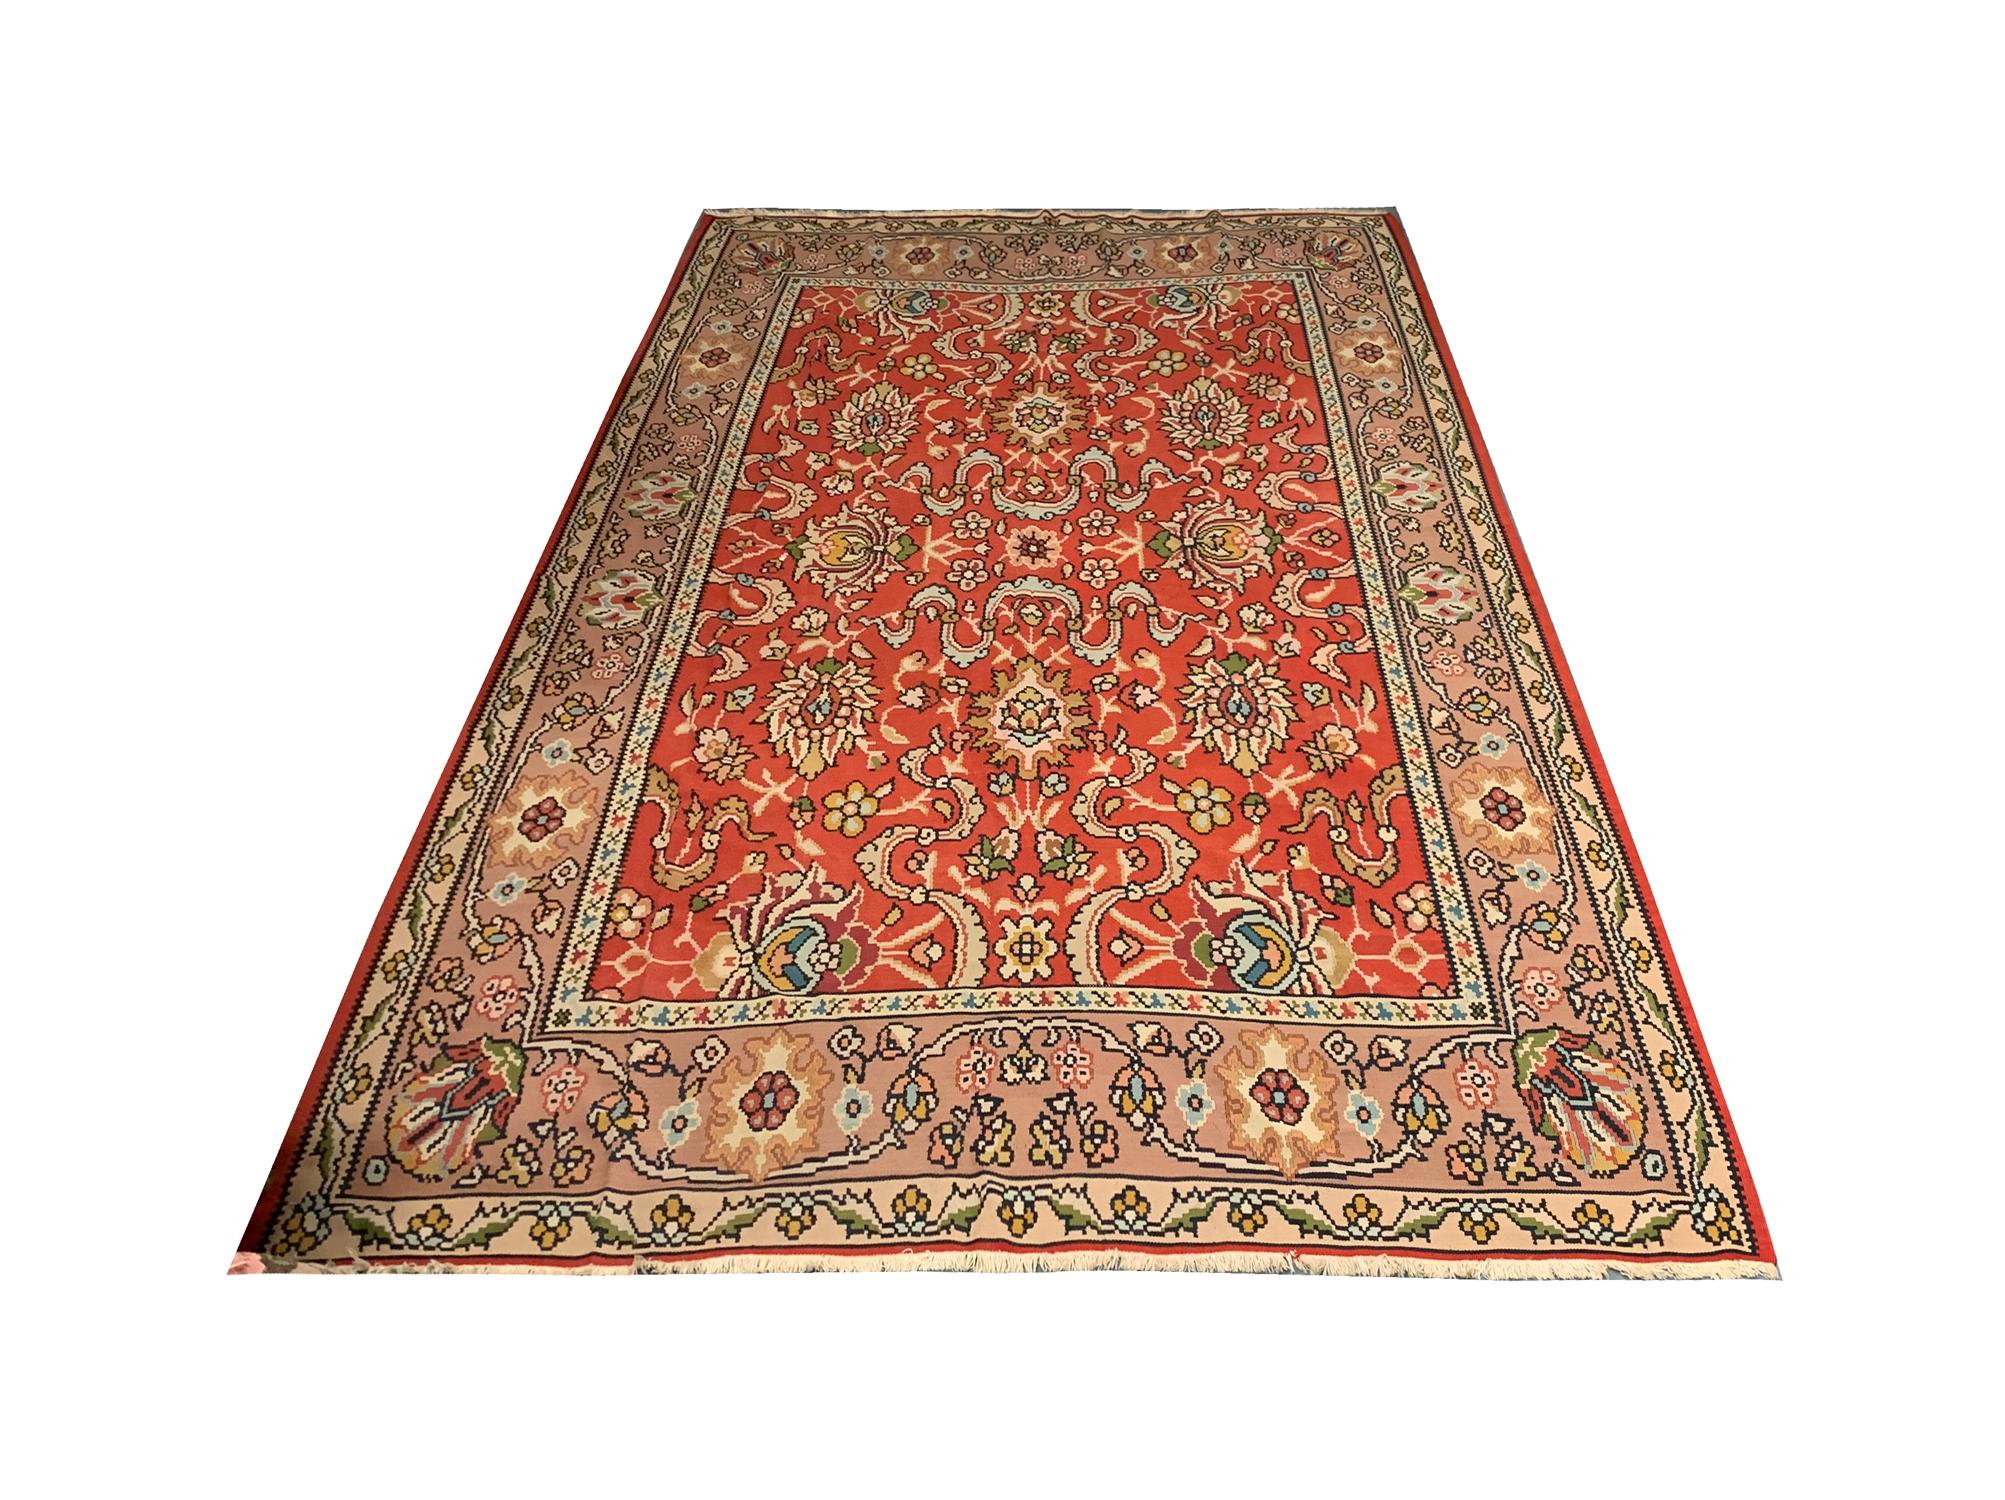 Dieser antike Teppich aus feiner roter Wolle wurde in den 1930er Jahren in der Türkei, Anatolien, von Hand gewebt. Das zentrale Muster besteht aus einem symmetrischen All-Over-Muster, das mit floralen Mustern gewebt ist. Aufwändig gestaltet und aus